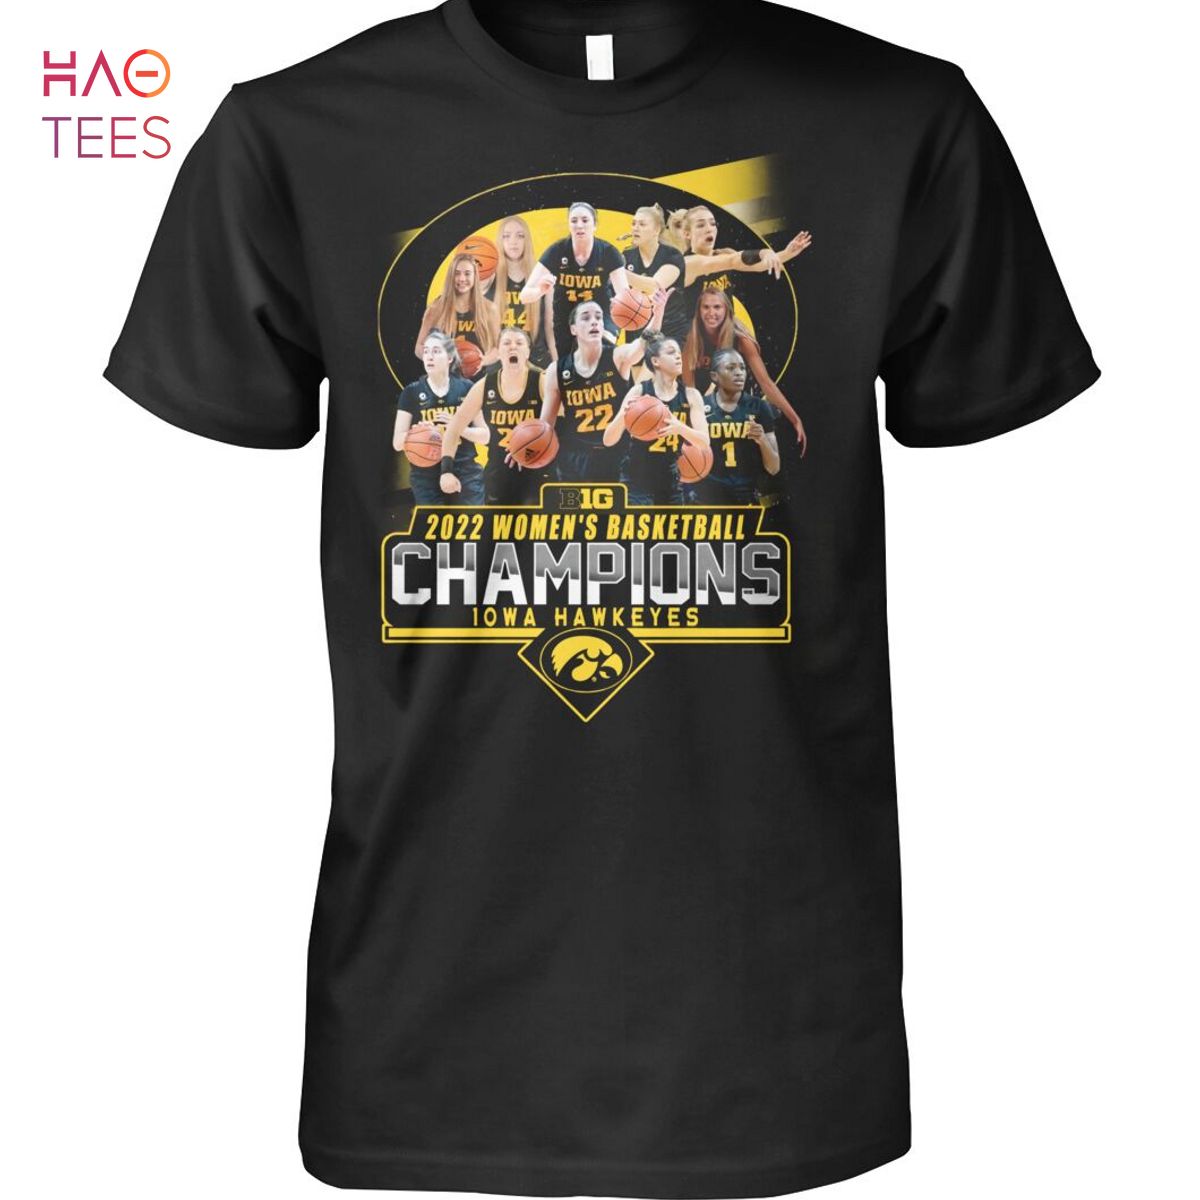 Big 2022 Women s Basketball Champions 10Wa Hawkeyes T Shirt